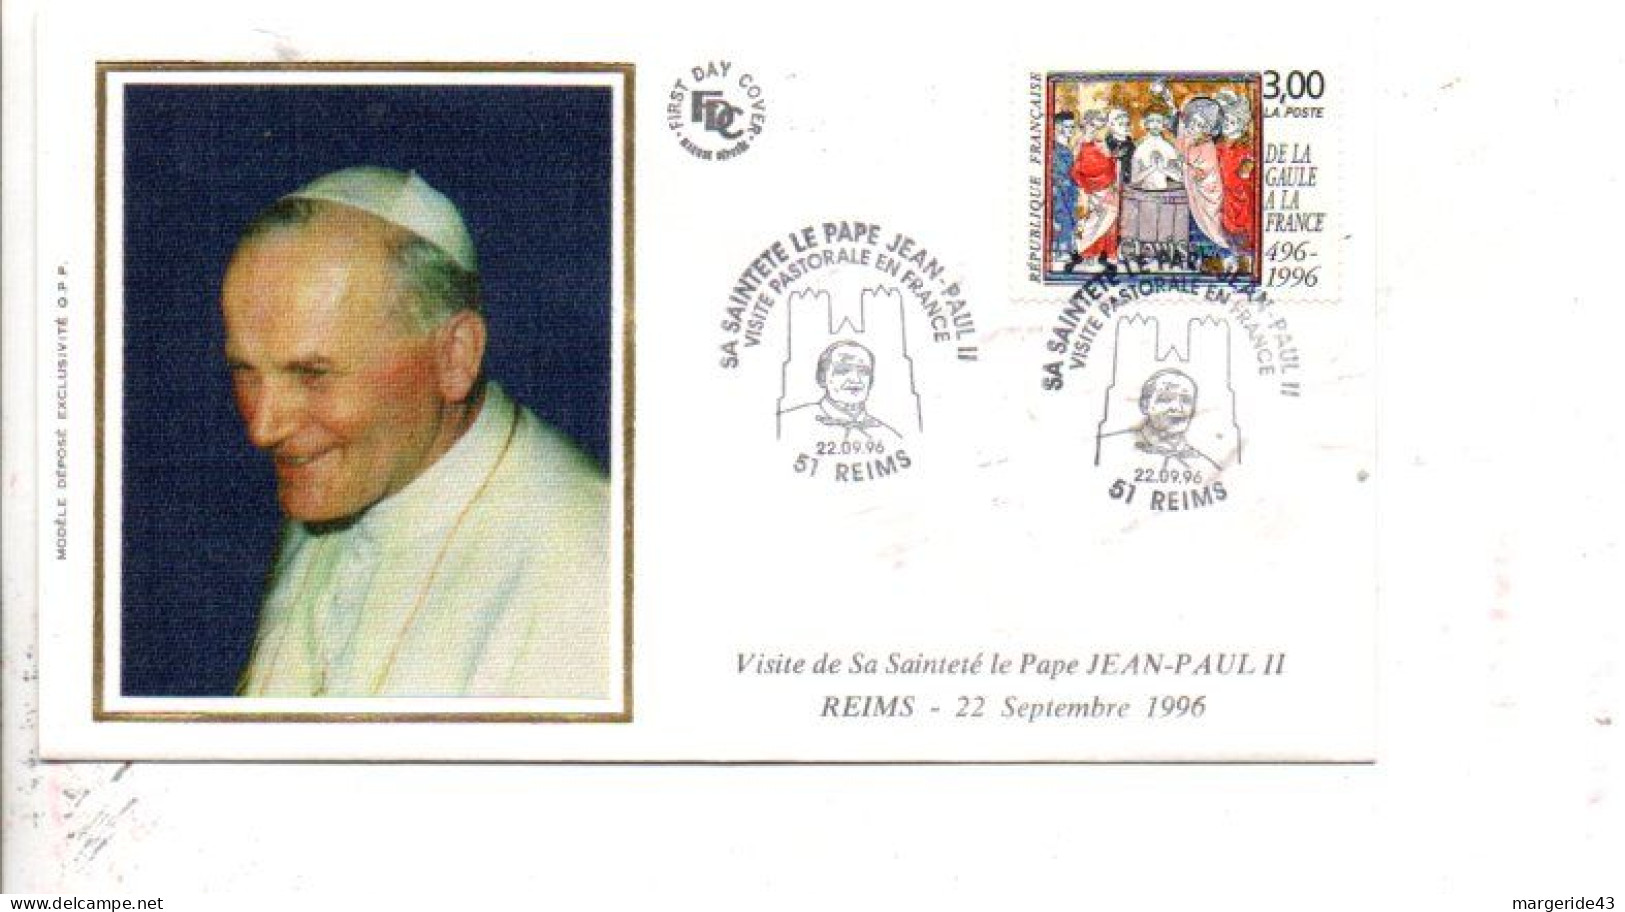 VISITE DU PAPE JEAN PAUL II à REIMS 1996 - Commemorative Postmarks